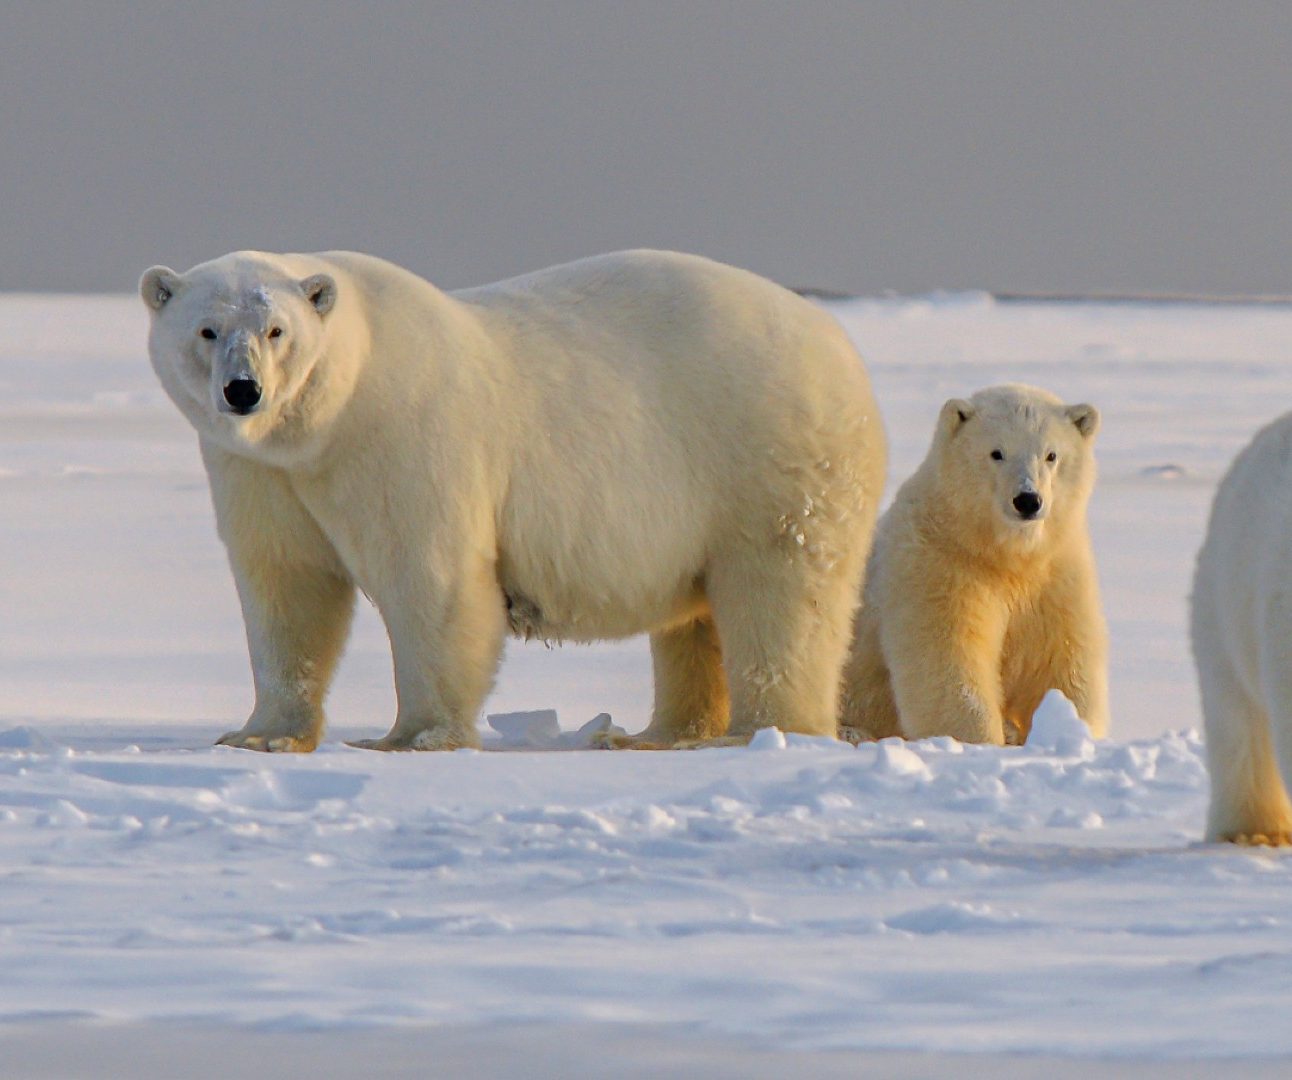 A group of three polar bears on the ice